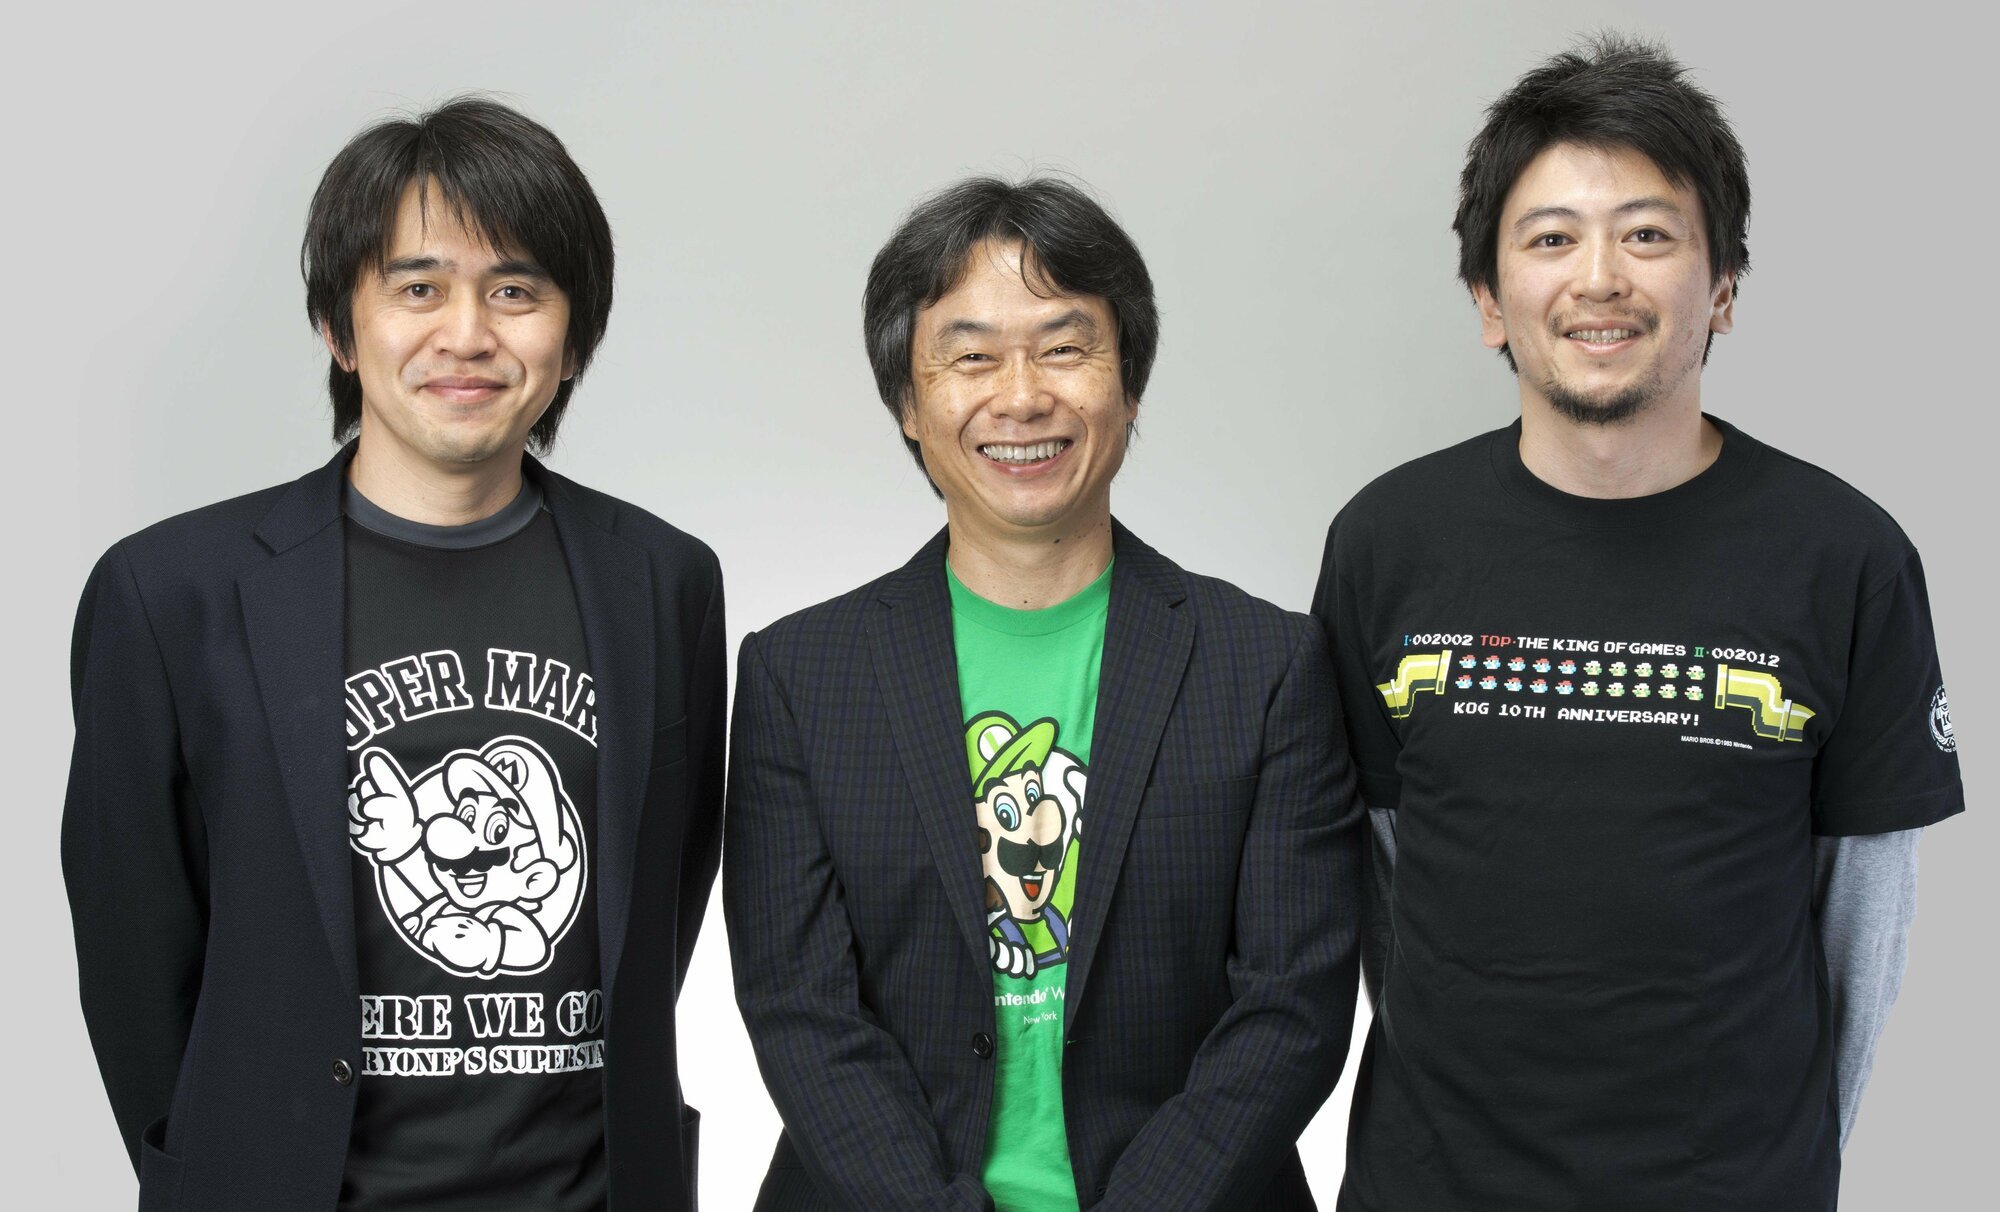 17 Fascinating Facts About Nintendo Legend Shigeru Miyamoto